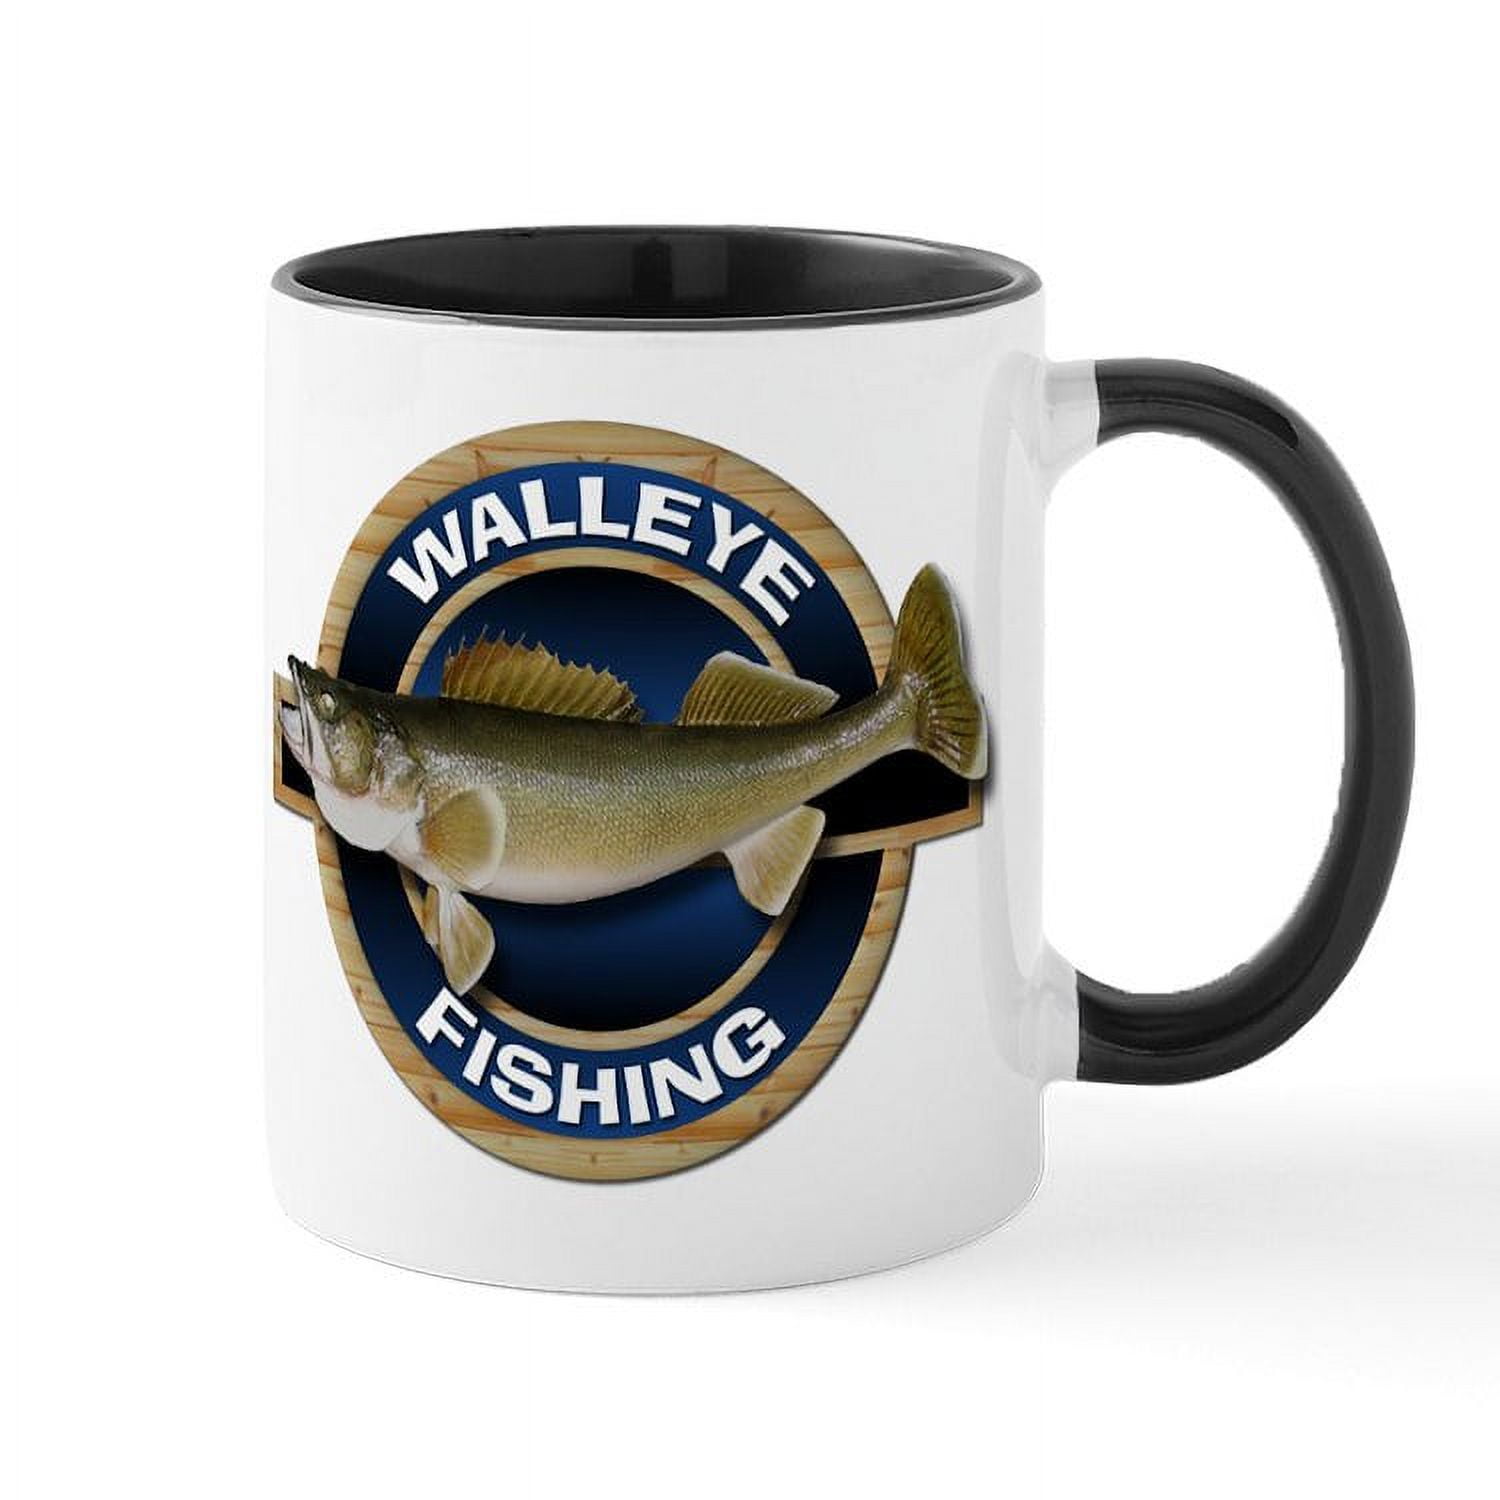 CafePress - Walleye Fishing Mug - 11 oz Ceramic Mug - Novelty